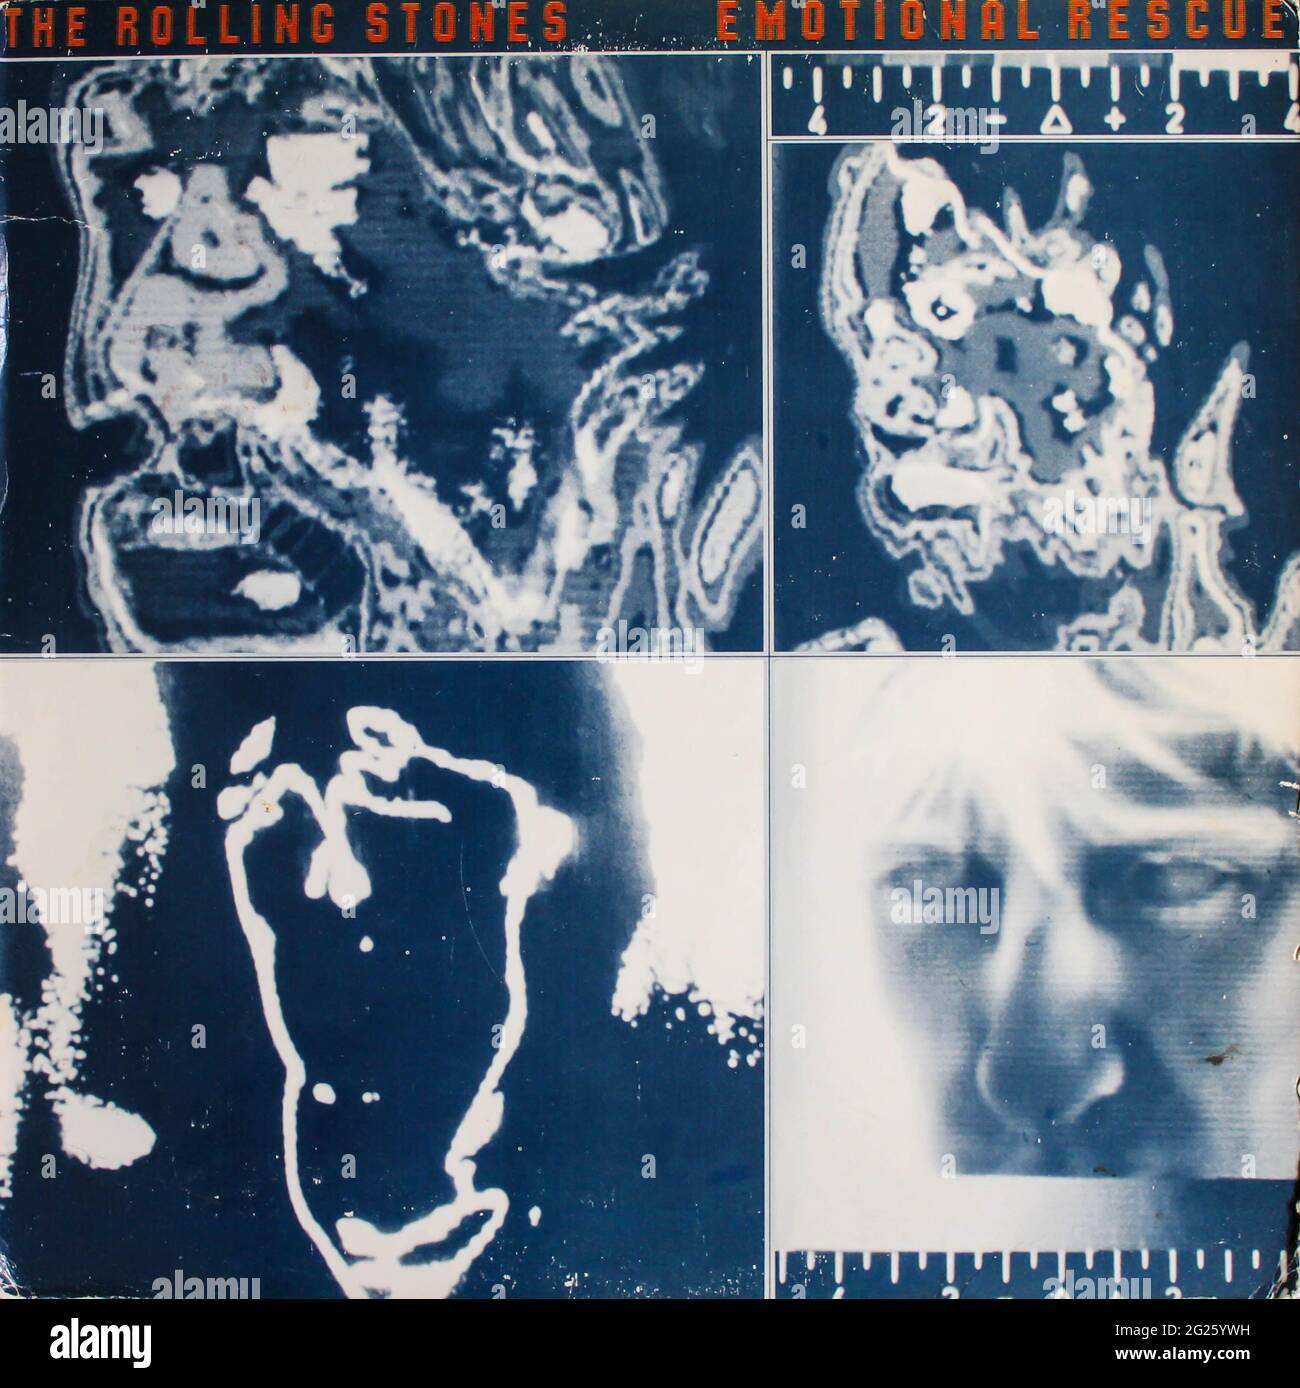 Rock band inglese, l'album musicale Rolling Stones su disco LP con dischi in vinile. Intitolato: Copertina dell'album Emotional Rescue Foto Stock